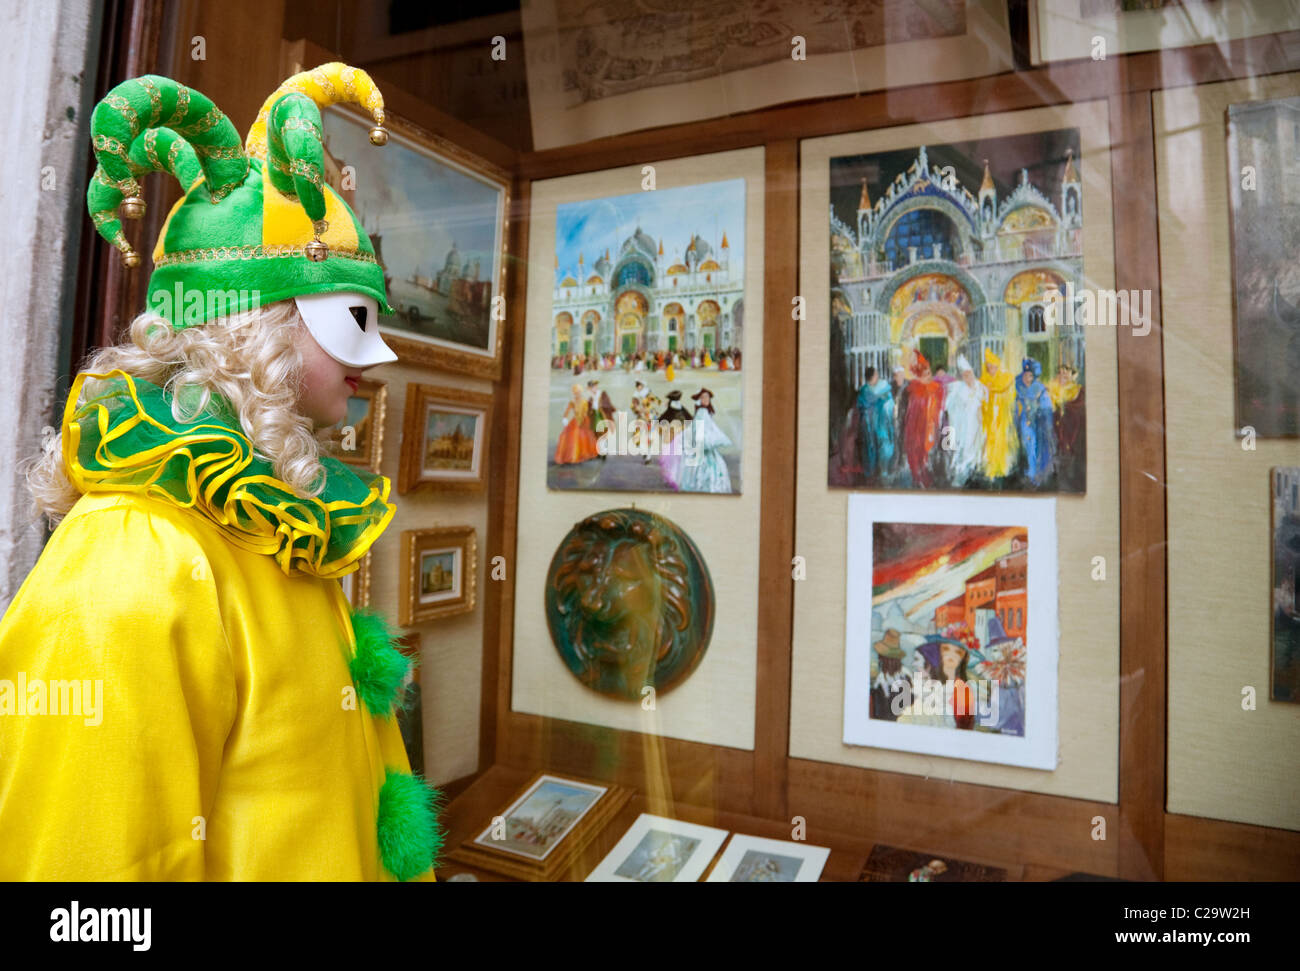 Una chica en Disfraz de payaso mira pinturas de Venecia en una galería de cristal en el Carnaval de Venecia, Italia Foto de stock